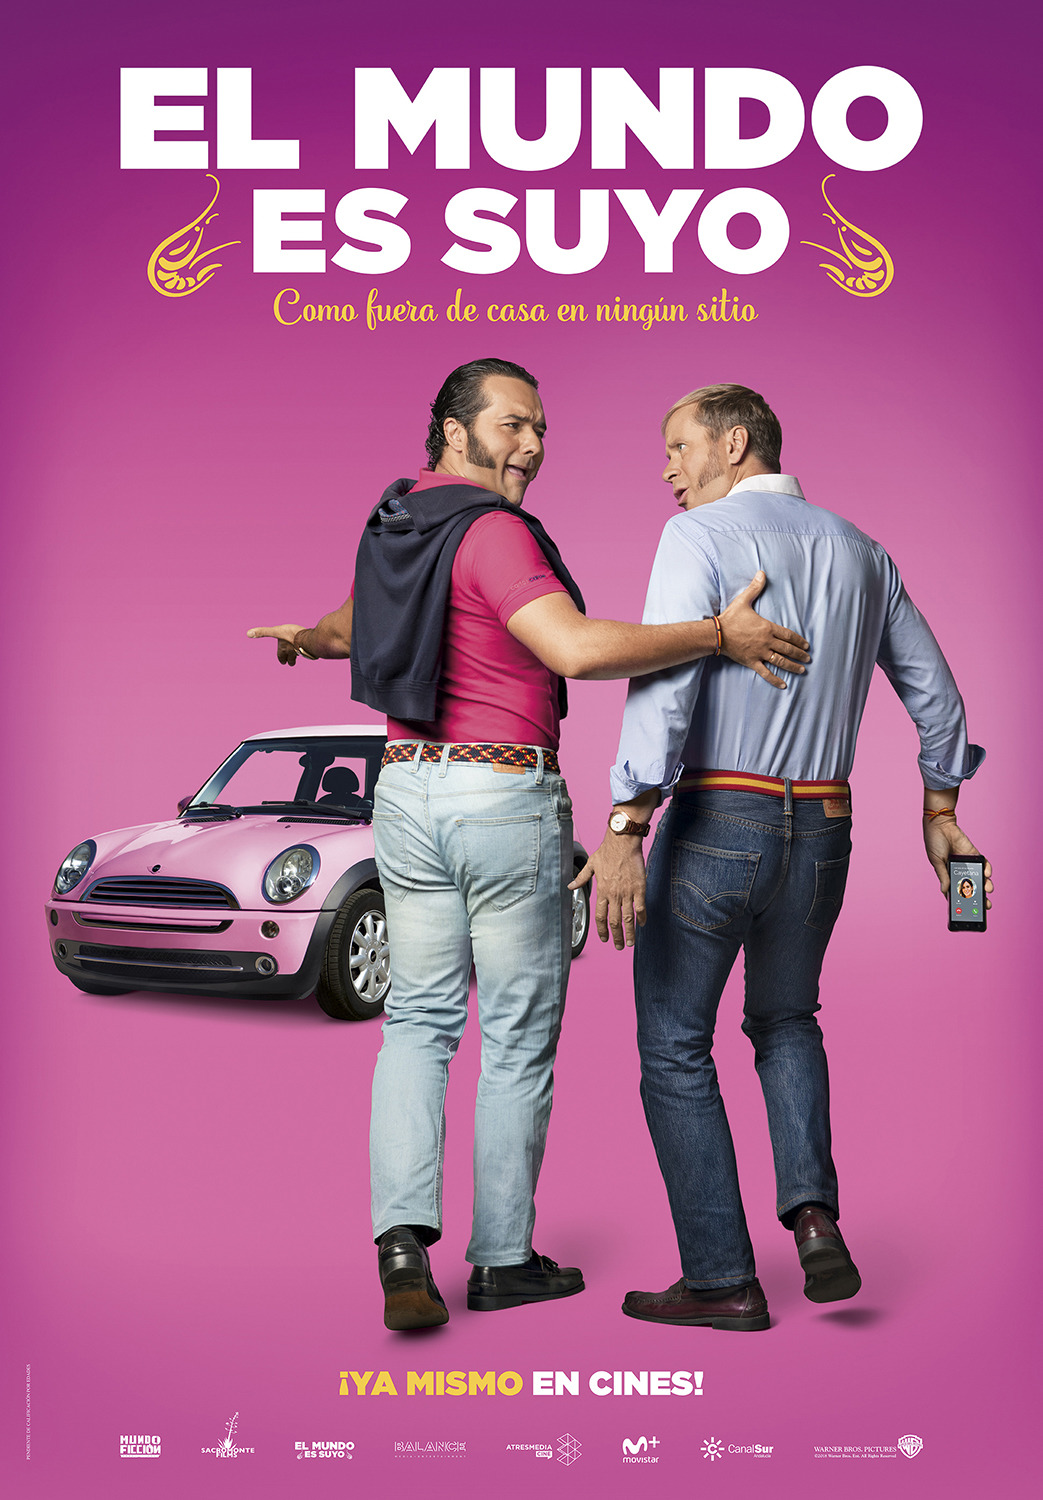 Extra Large Movie Poster Image for El mundo es suyo (#2 of 4)